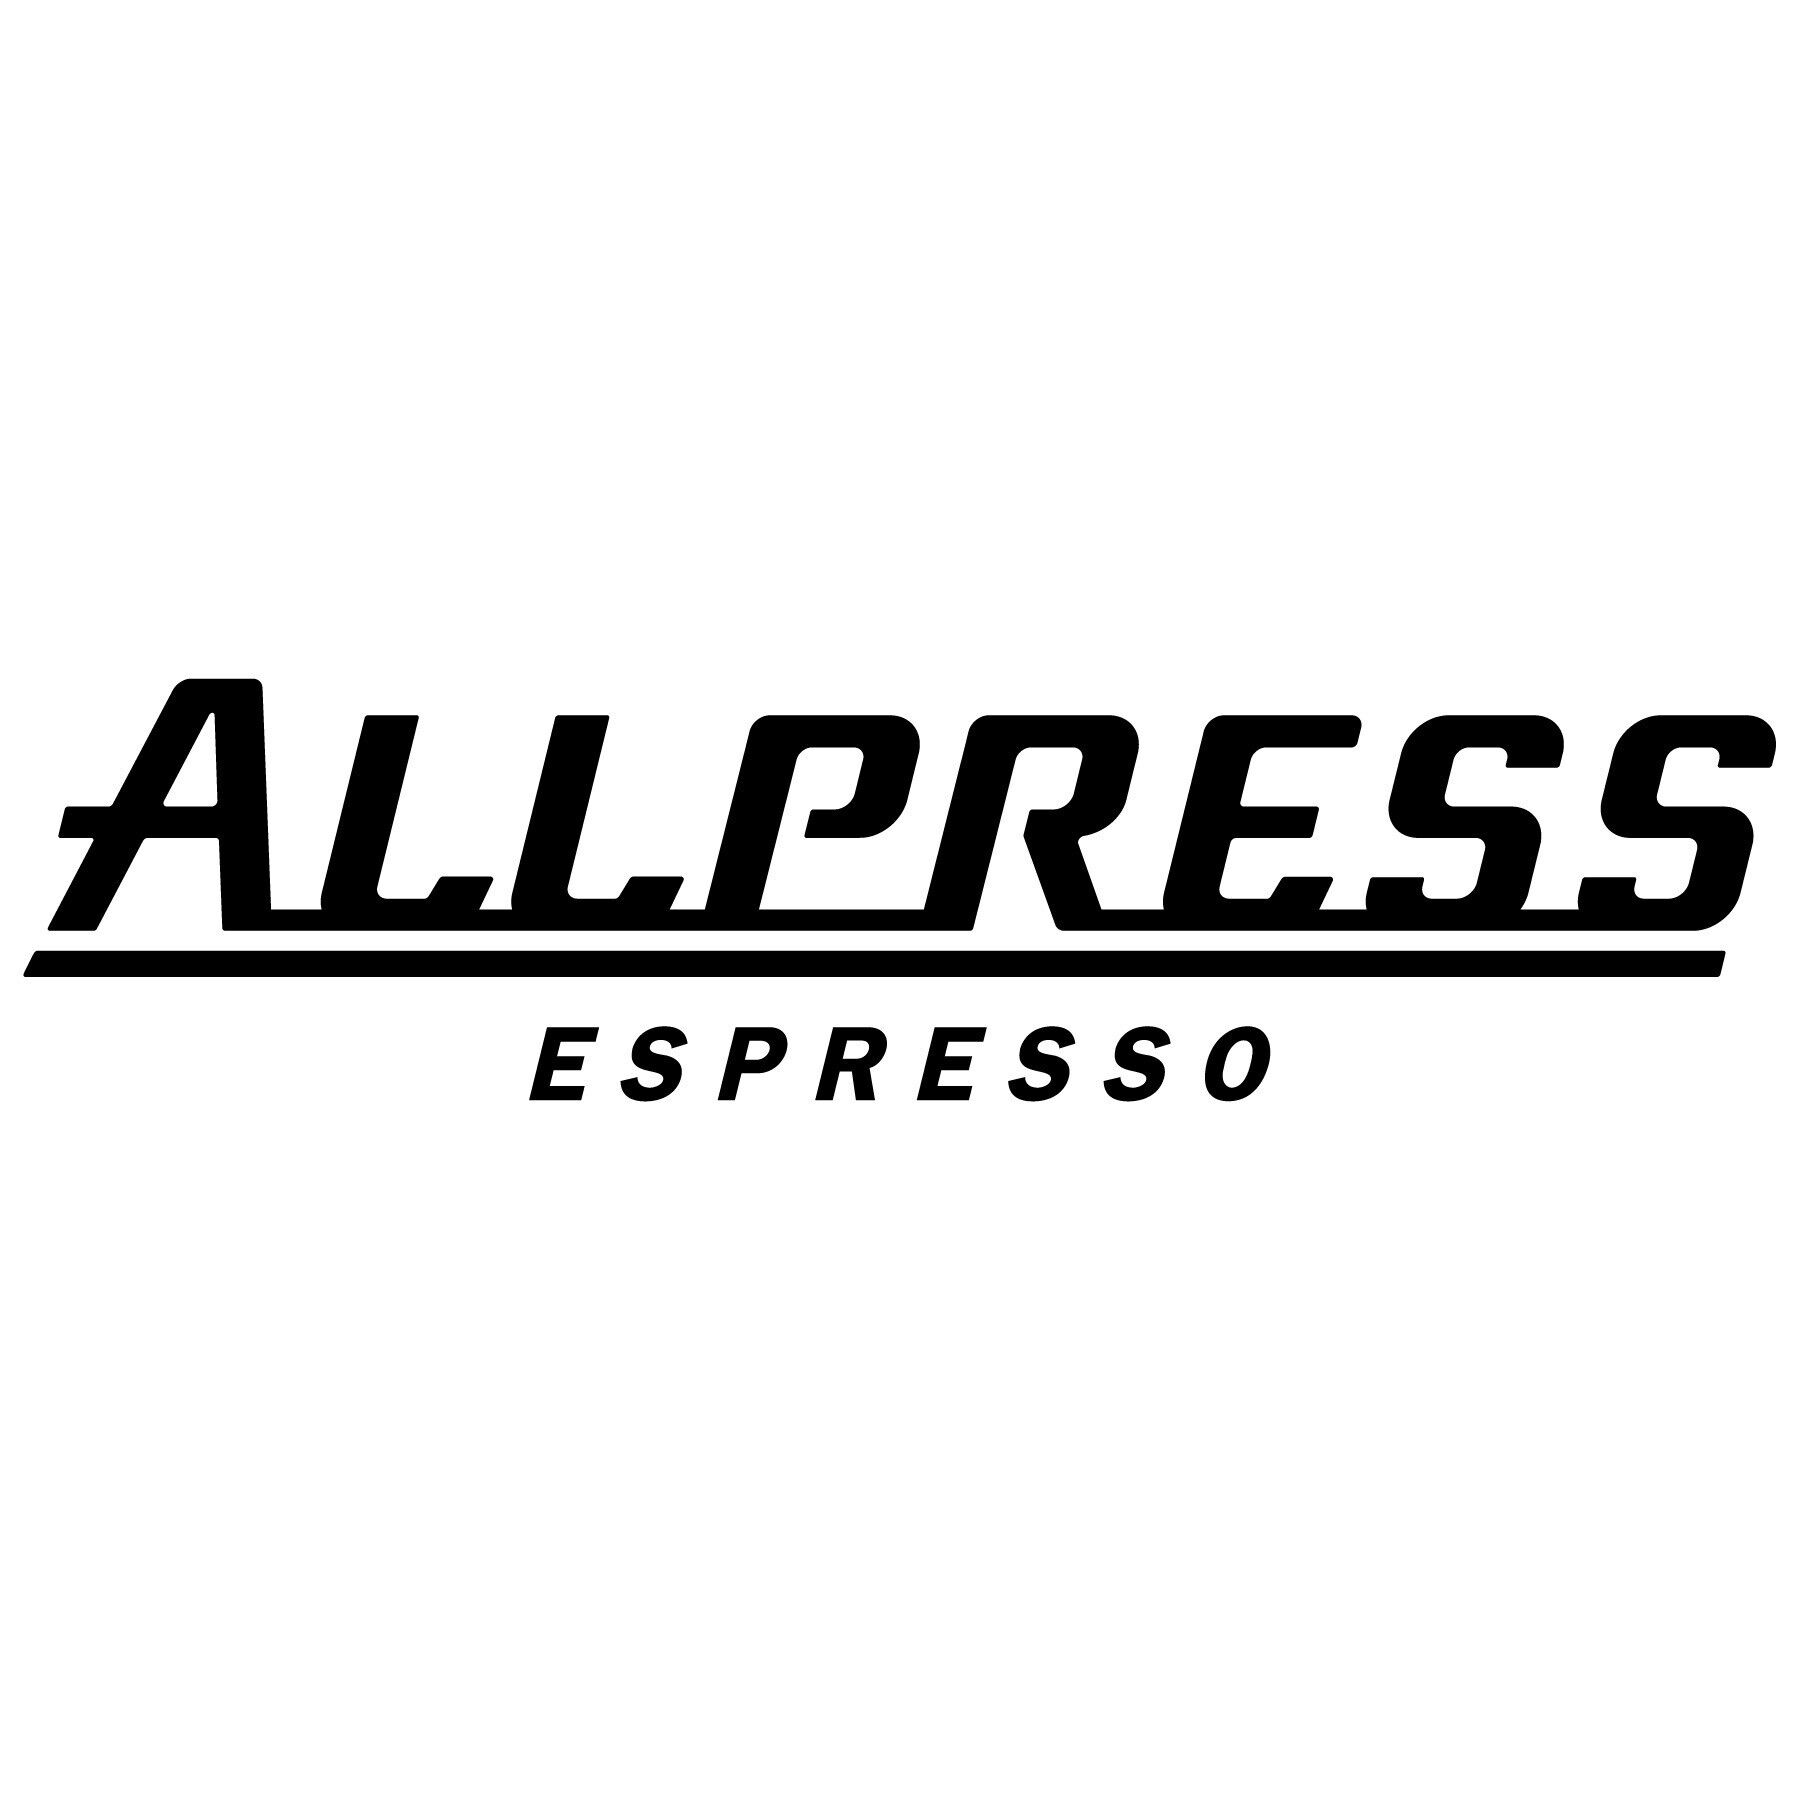 allpress logo